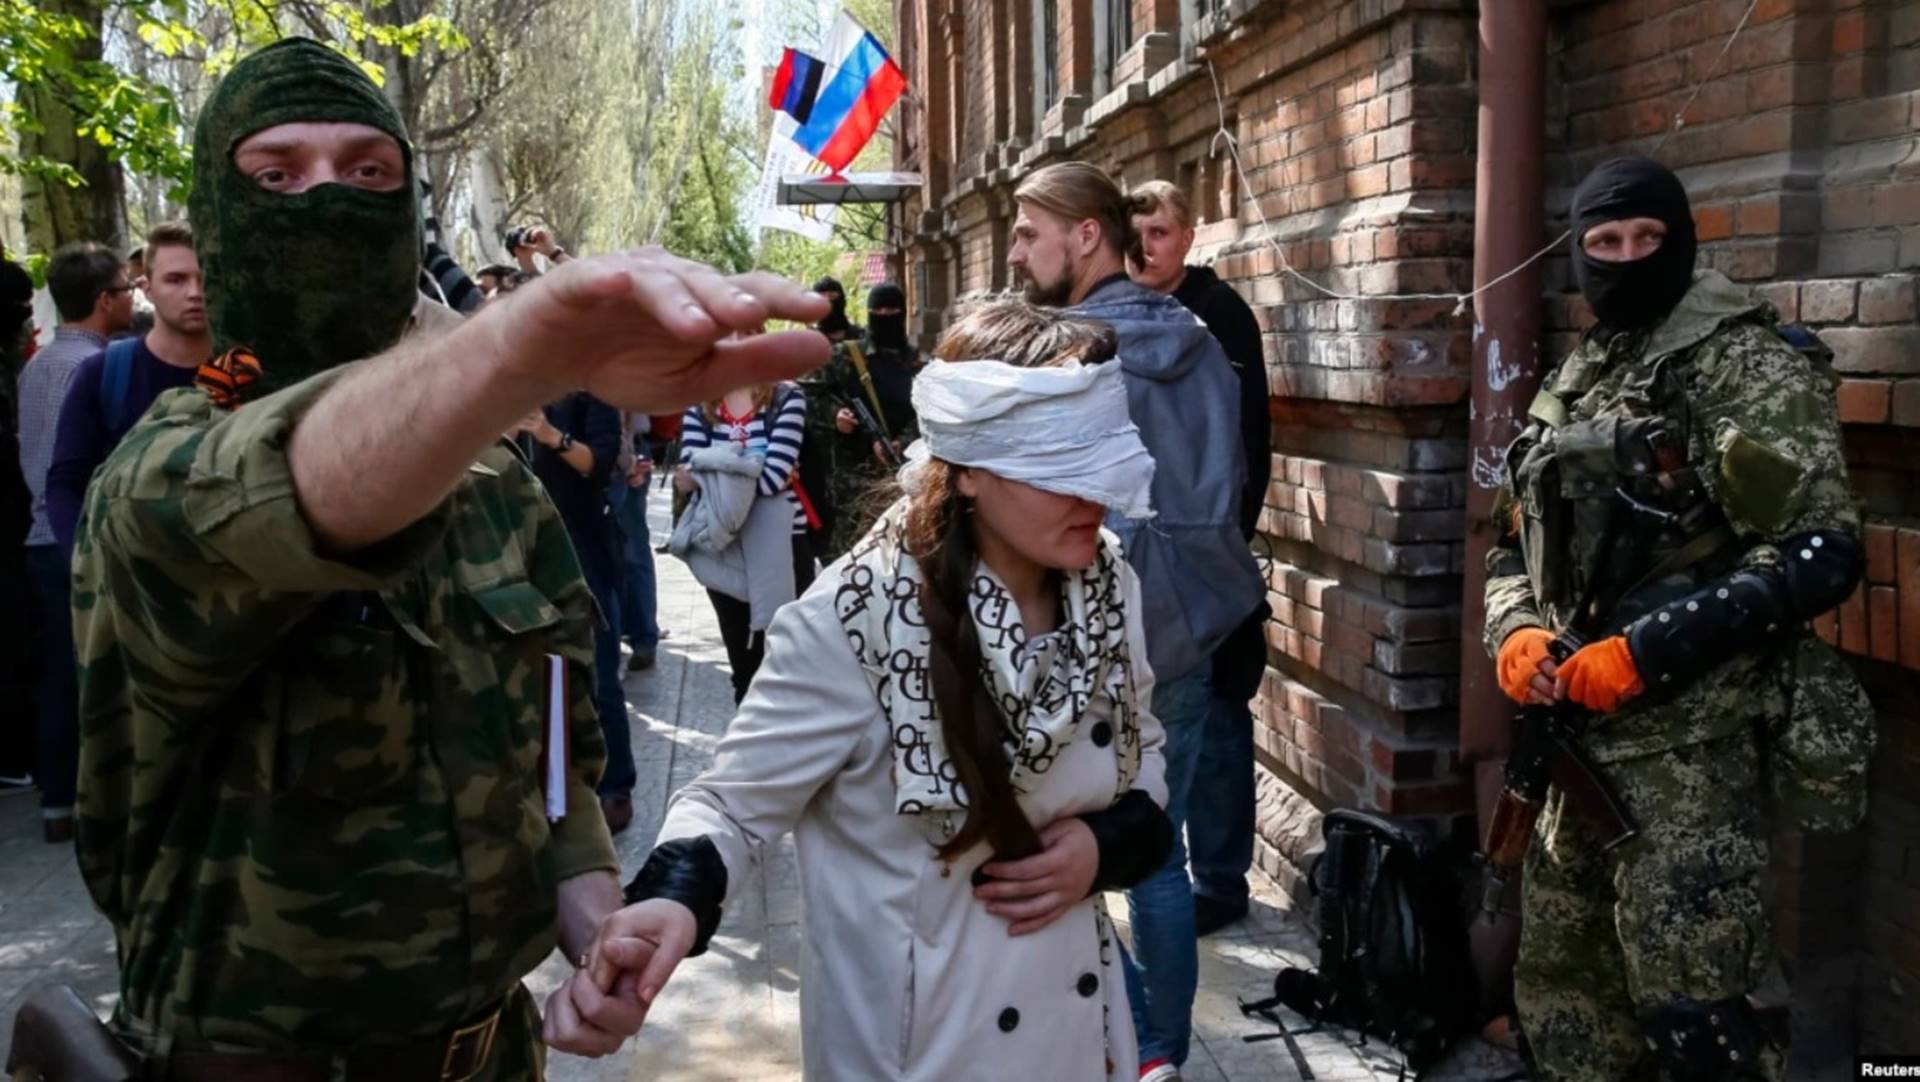 "RUSKI VOJNICI PROVODE GENOCID U UKRAJINI, SILUJU UKRAJINKE"